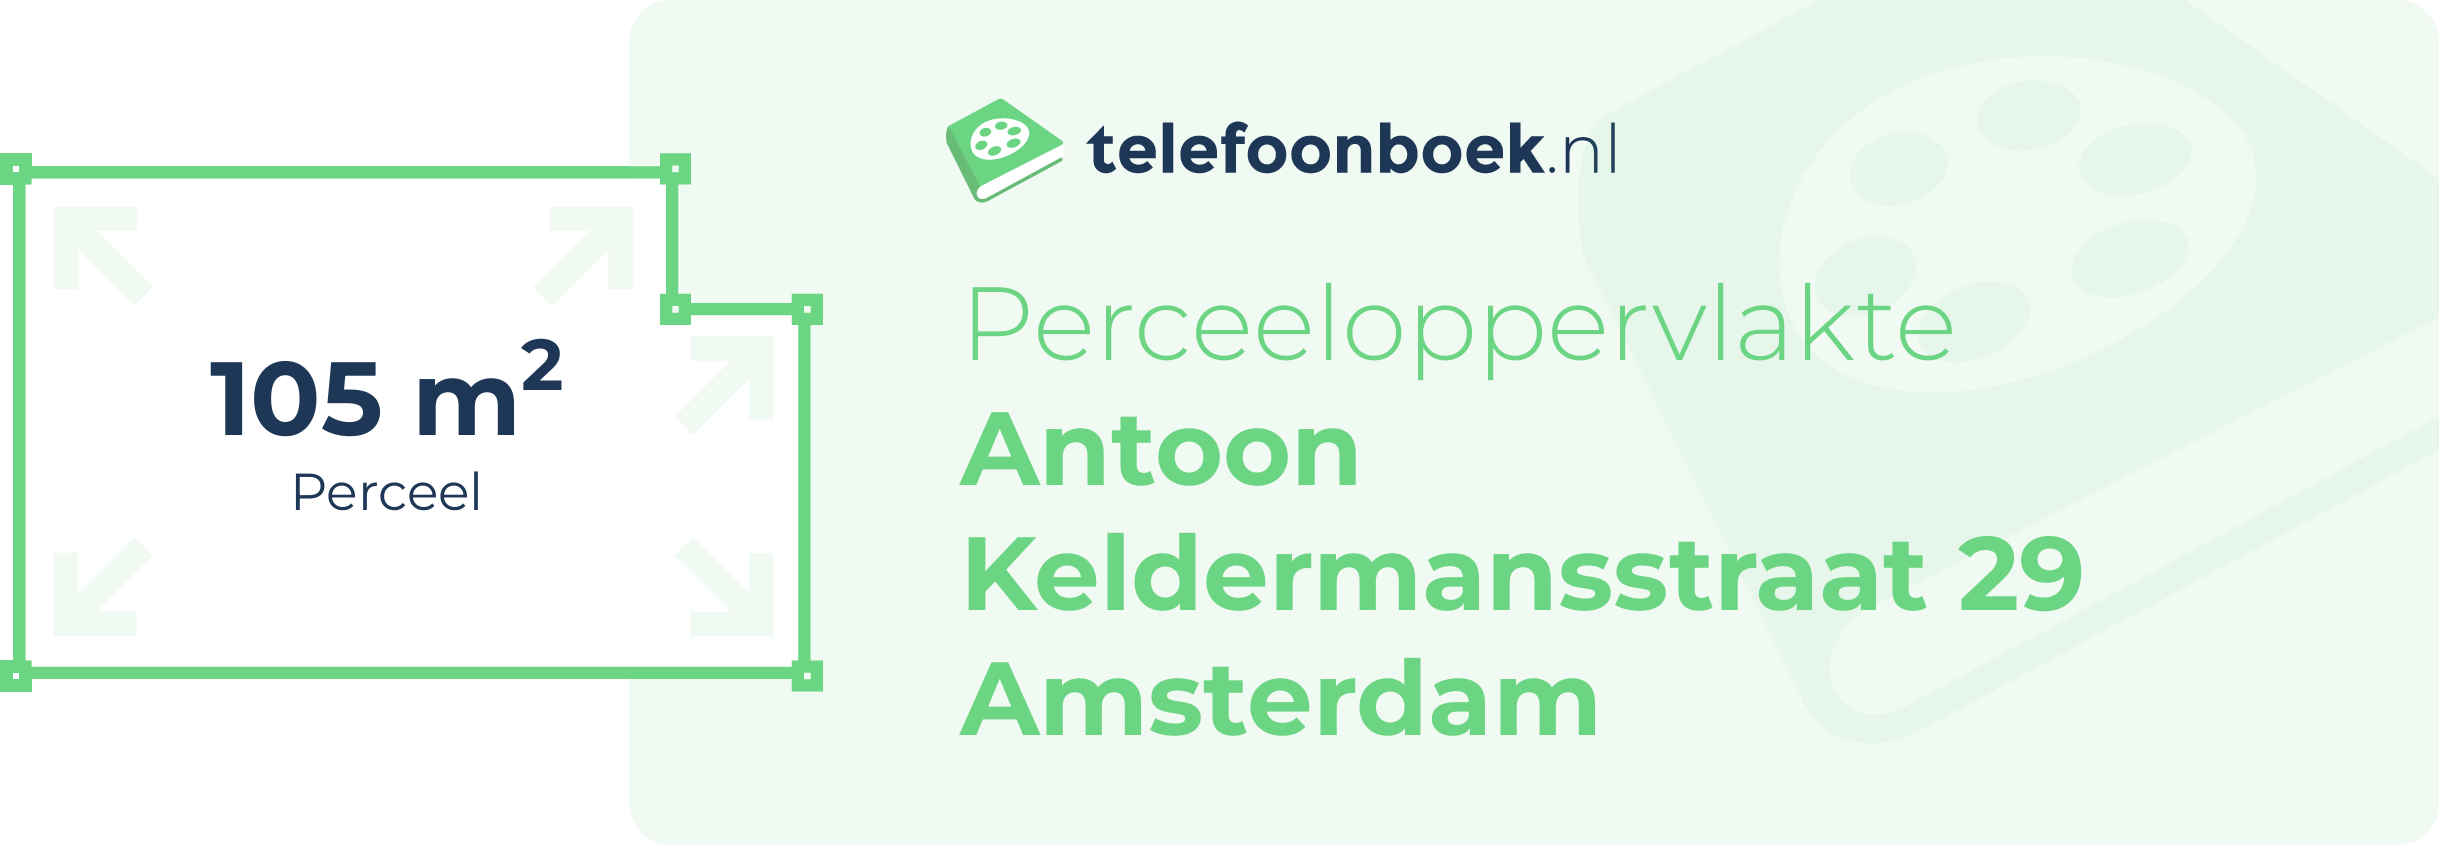 Perceeloppervlakte Antoon Keldermansstraat 29 Amsterdam